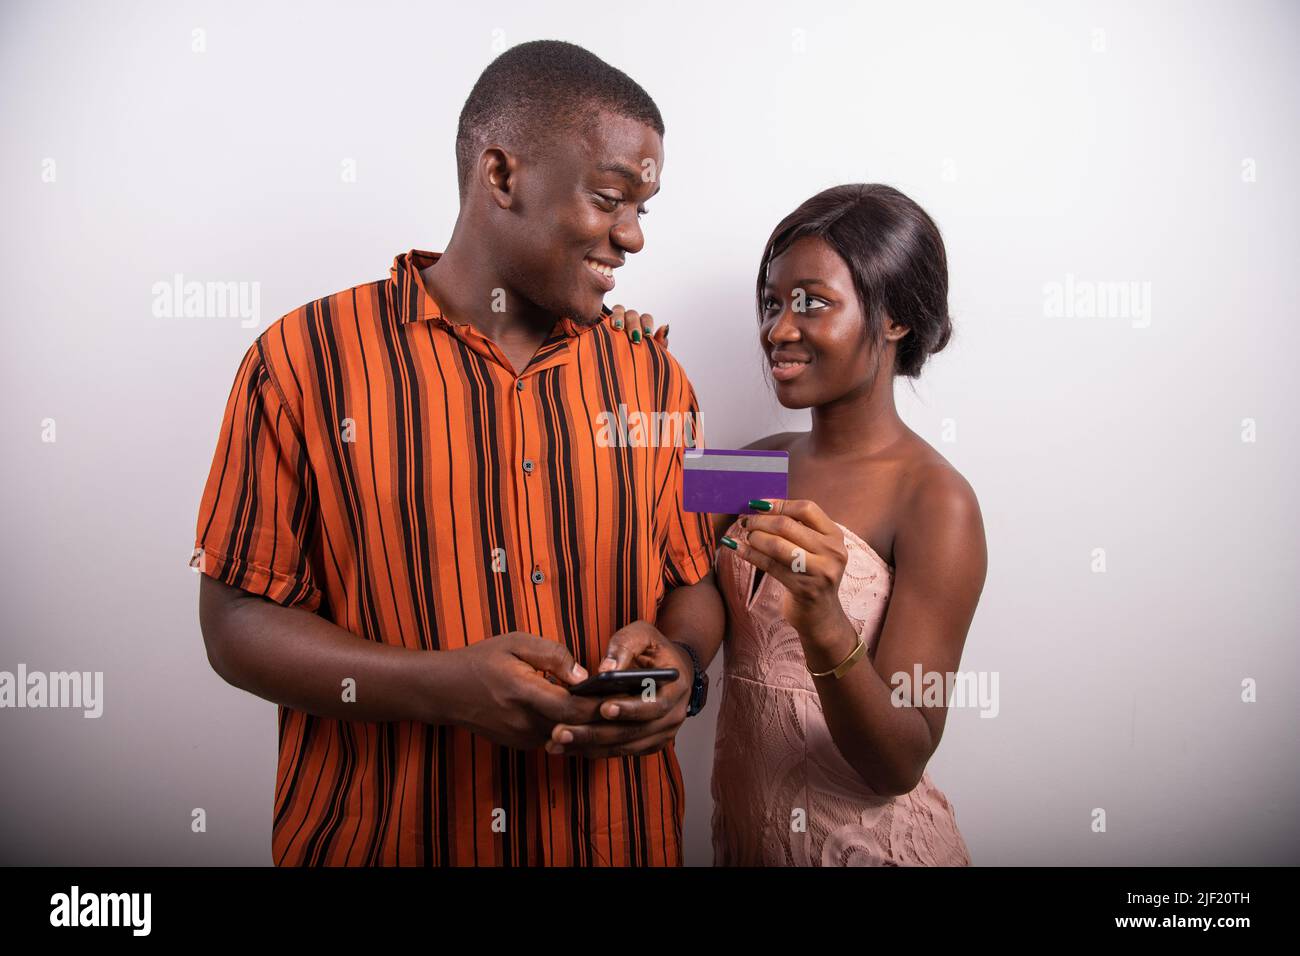 Un garçon et une fille africains font un paiement sur Internet en utilisant une carte de crédit et un smartphone, la technologie en Afrique Banque D'Images